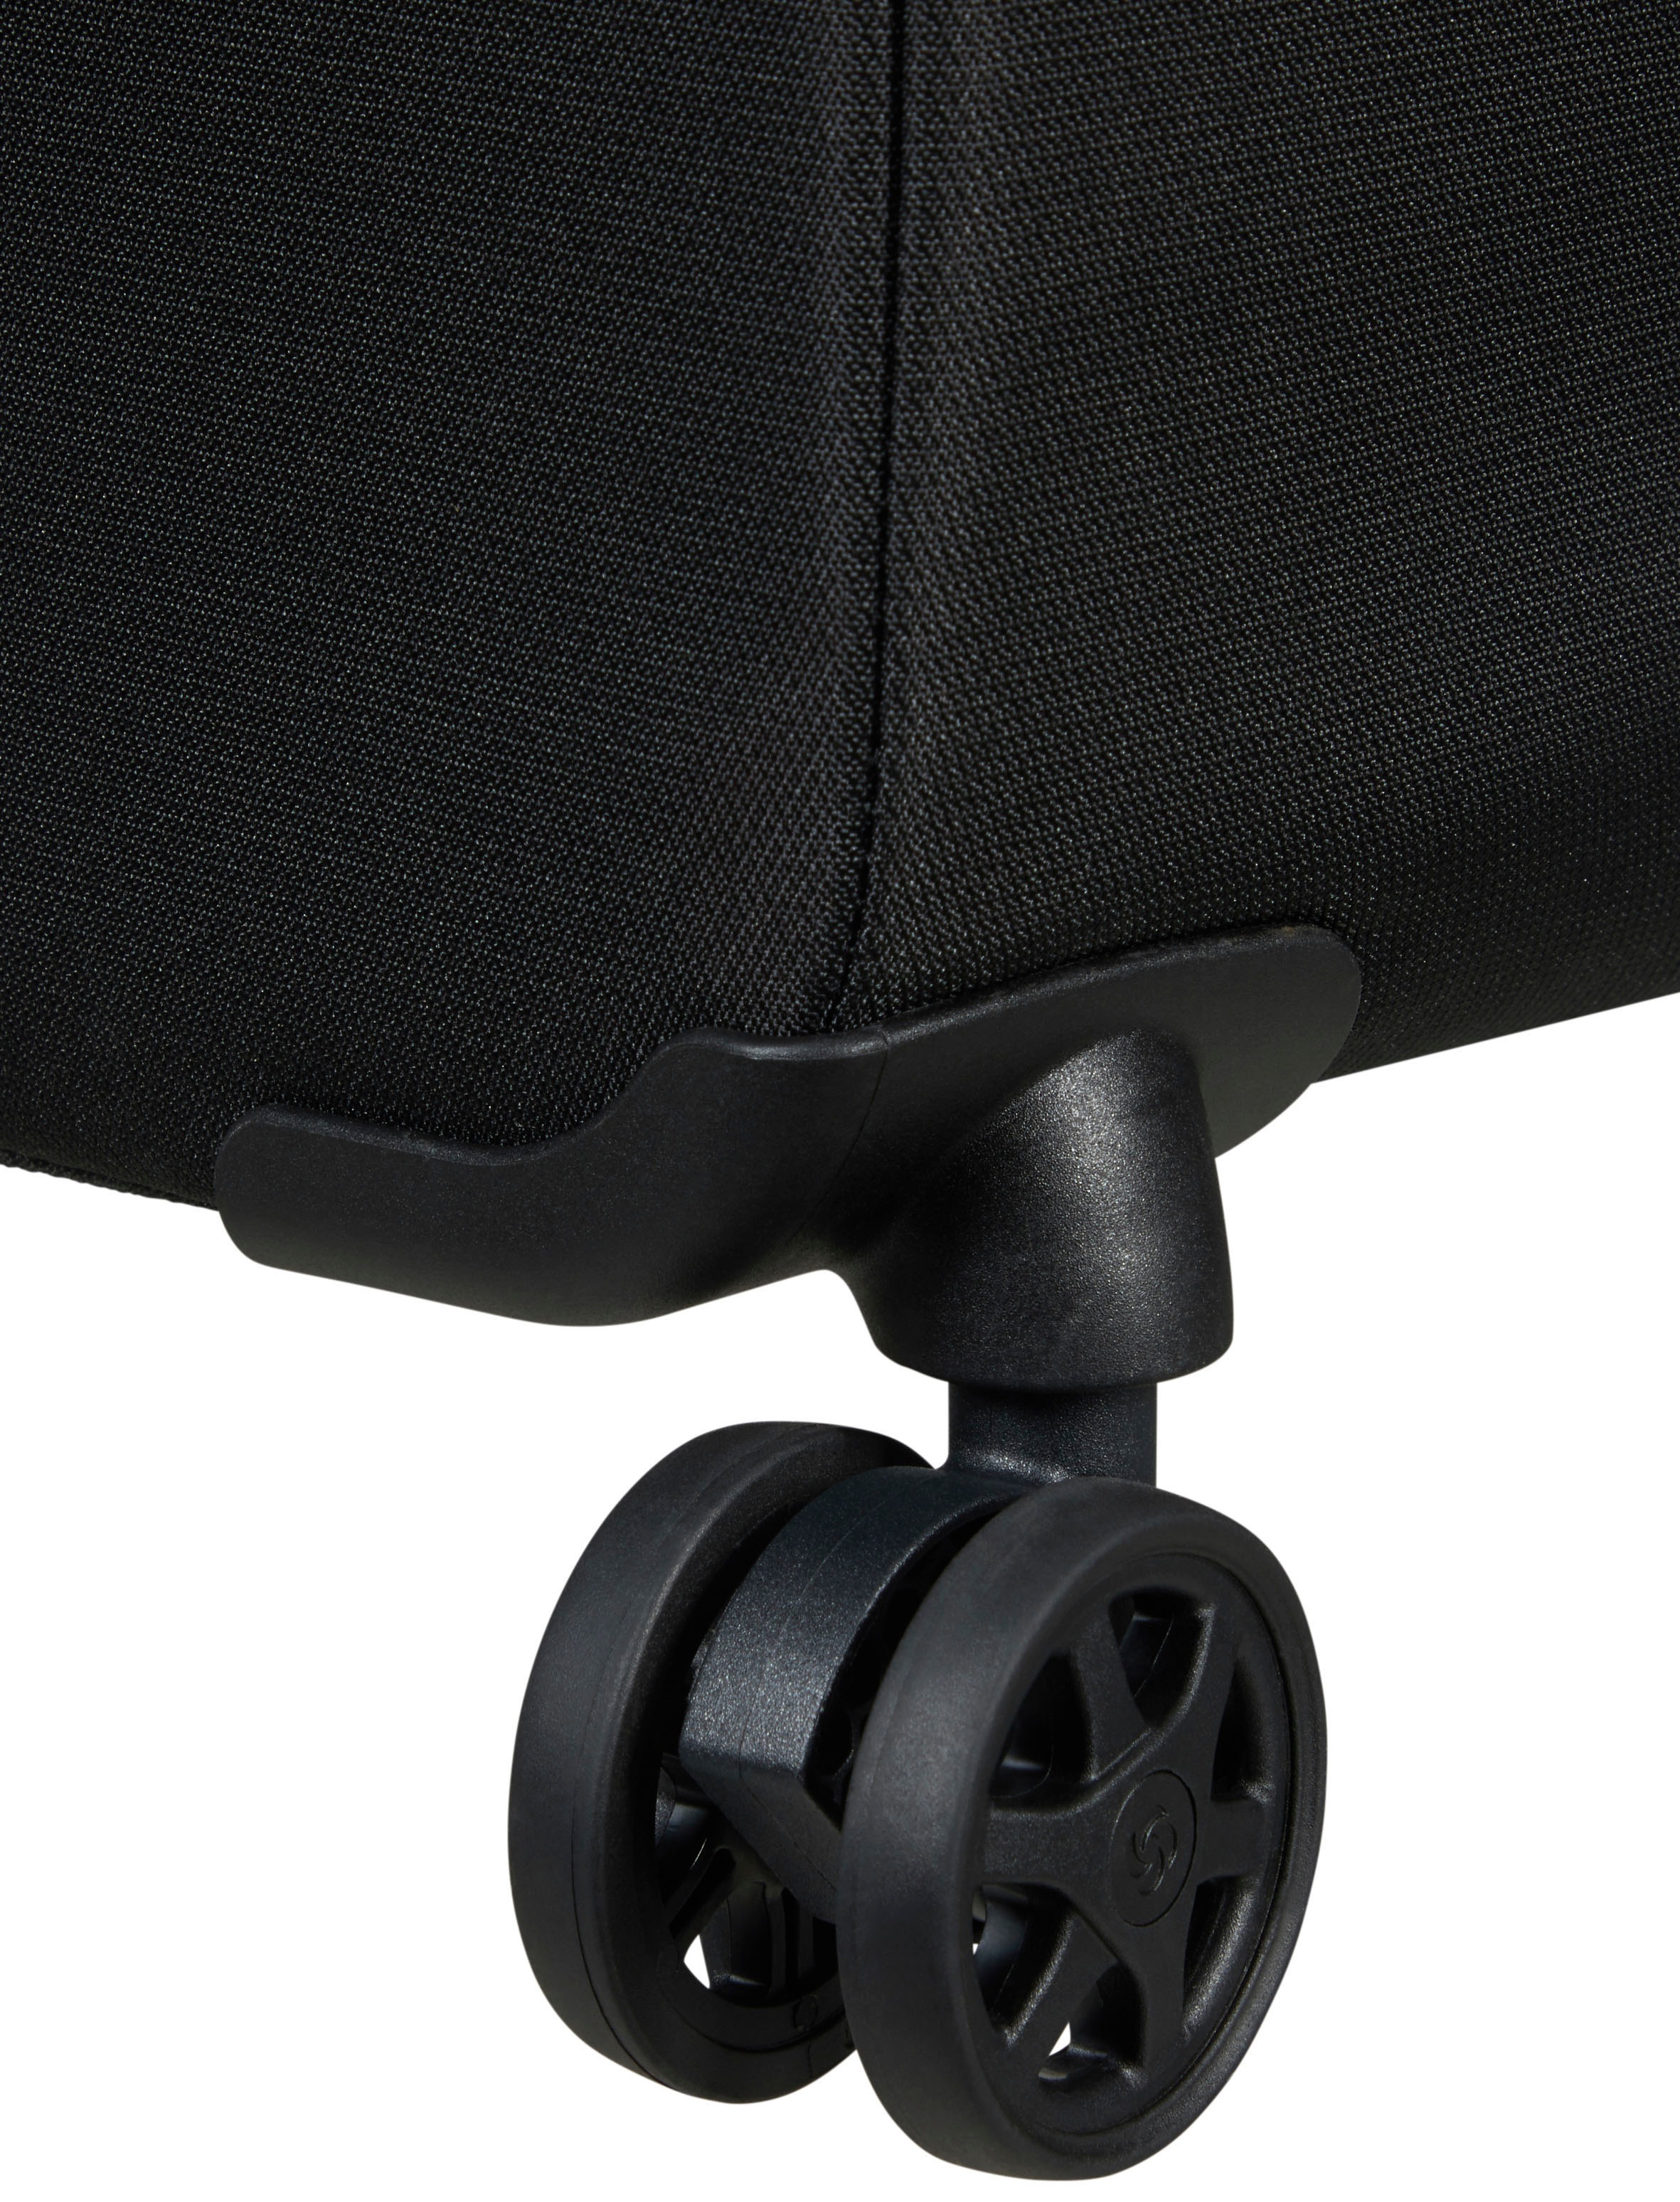 Samsonite Weichgepäck-Trolley »Litebeam, black, 77 cm«, 4 Rollen, Reisekoffer Aufgabegepäck Reisegepäck mit Volumenerweiterung